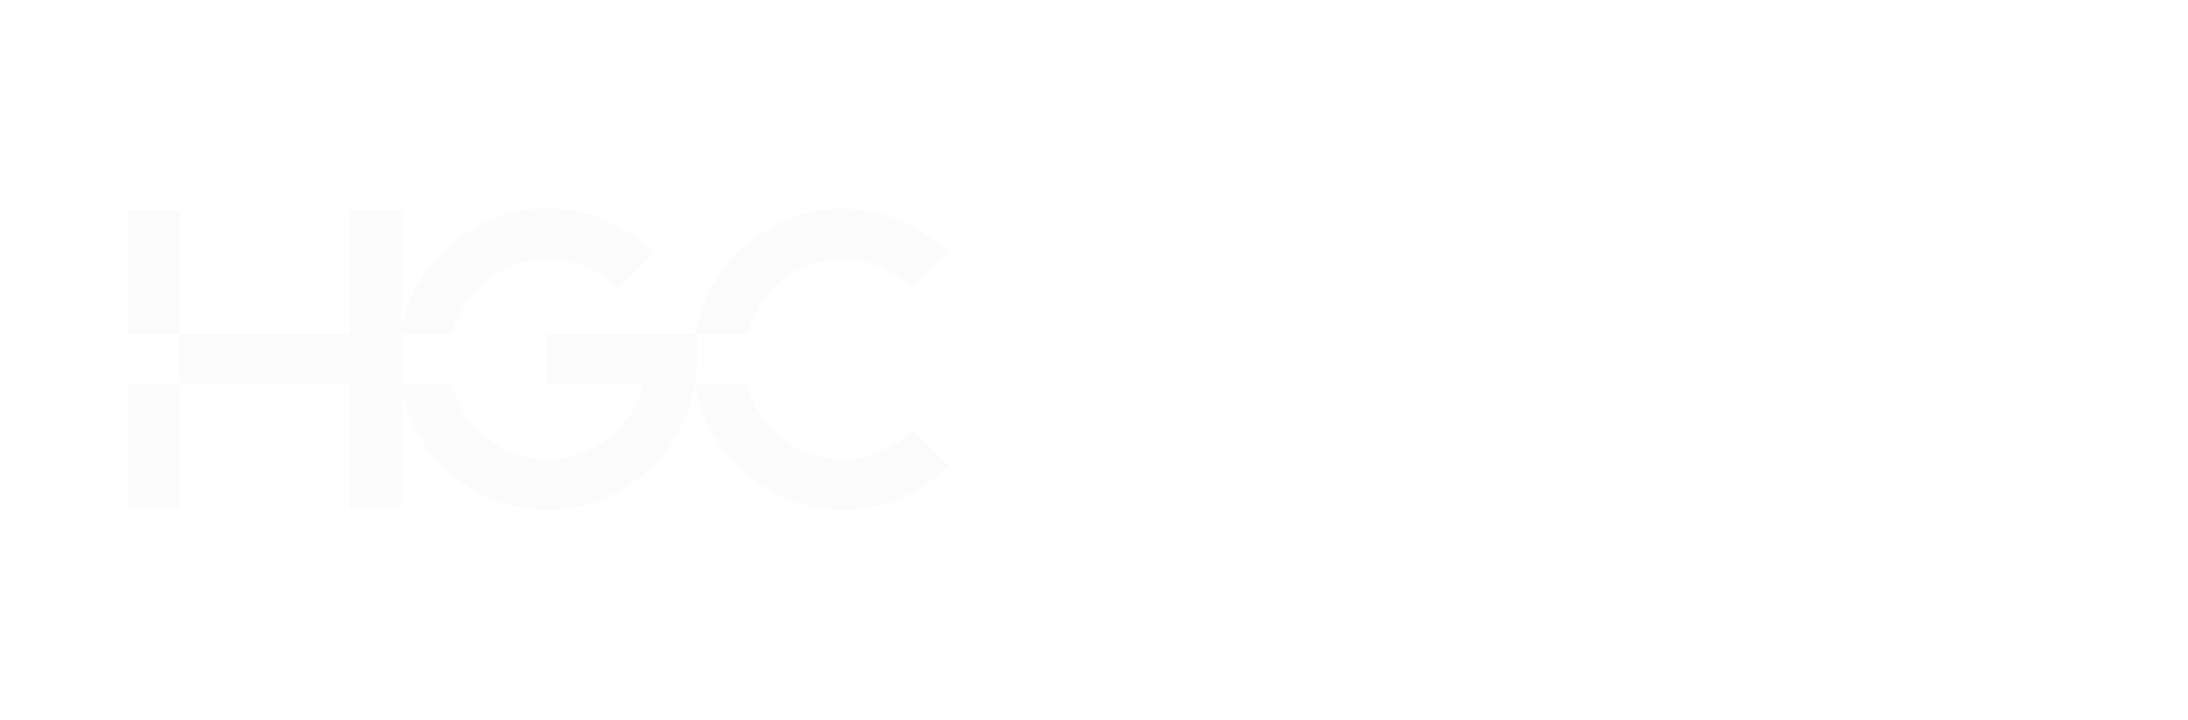 Logo de la société de communications mondiale Hgc sur fond noir.